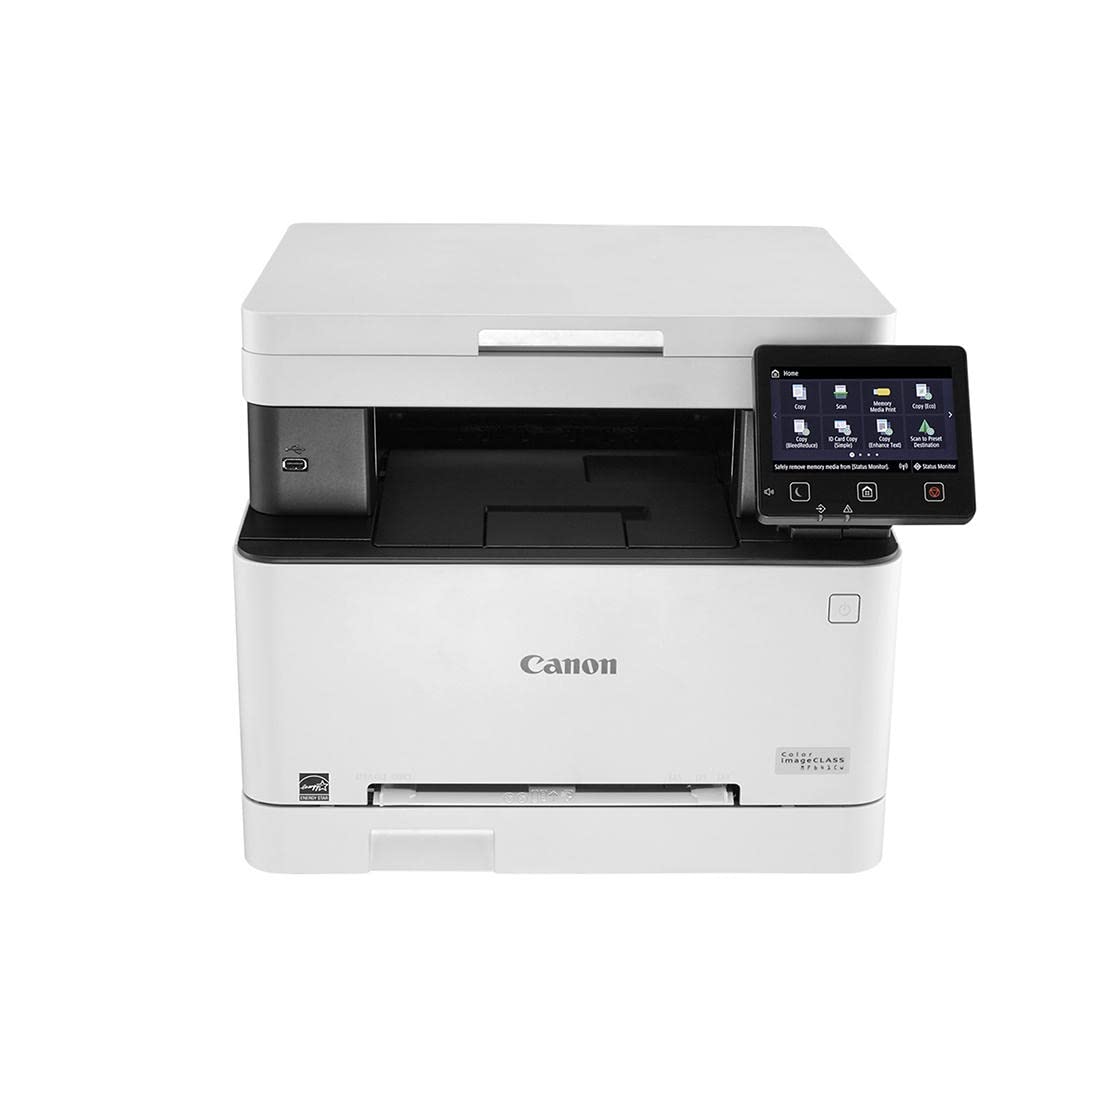 Canon Color imageCLASS MF641Cw - Impresora láser multifunción lista para dispositivos móviles